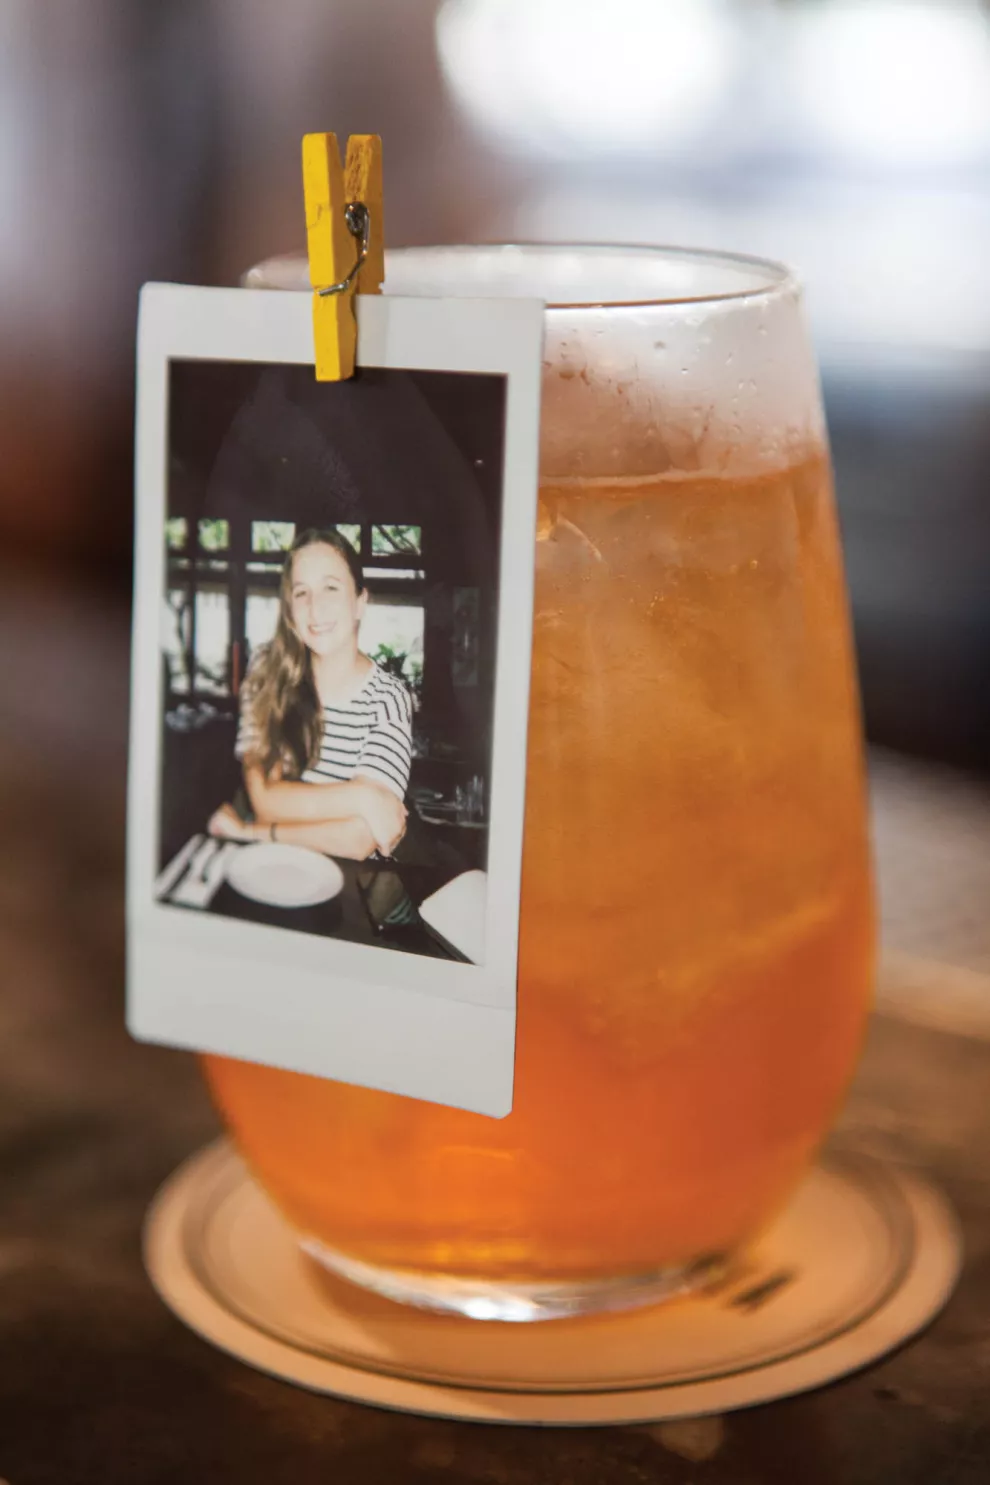 El favorito de La Fernetería: “Sonrisas de Polaroid”, con gin, Aperol, espumante y toques cítricos.